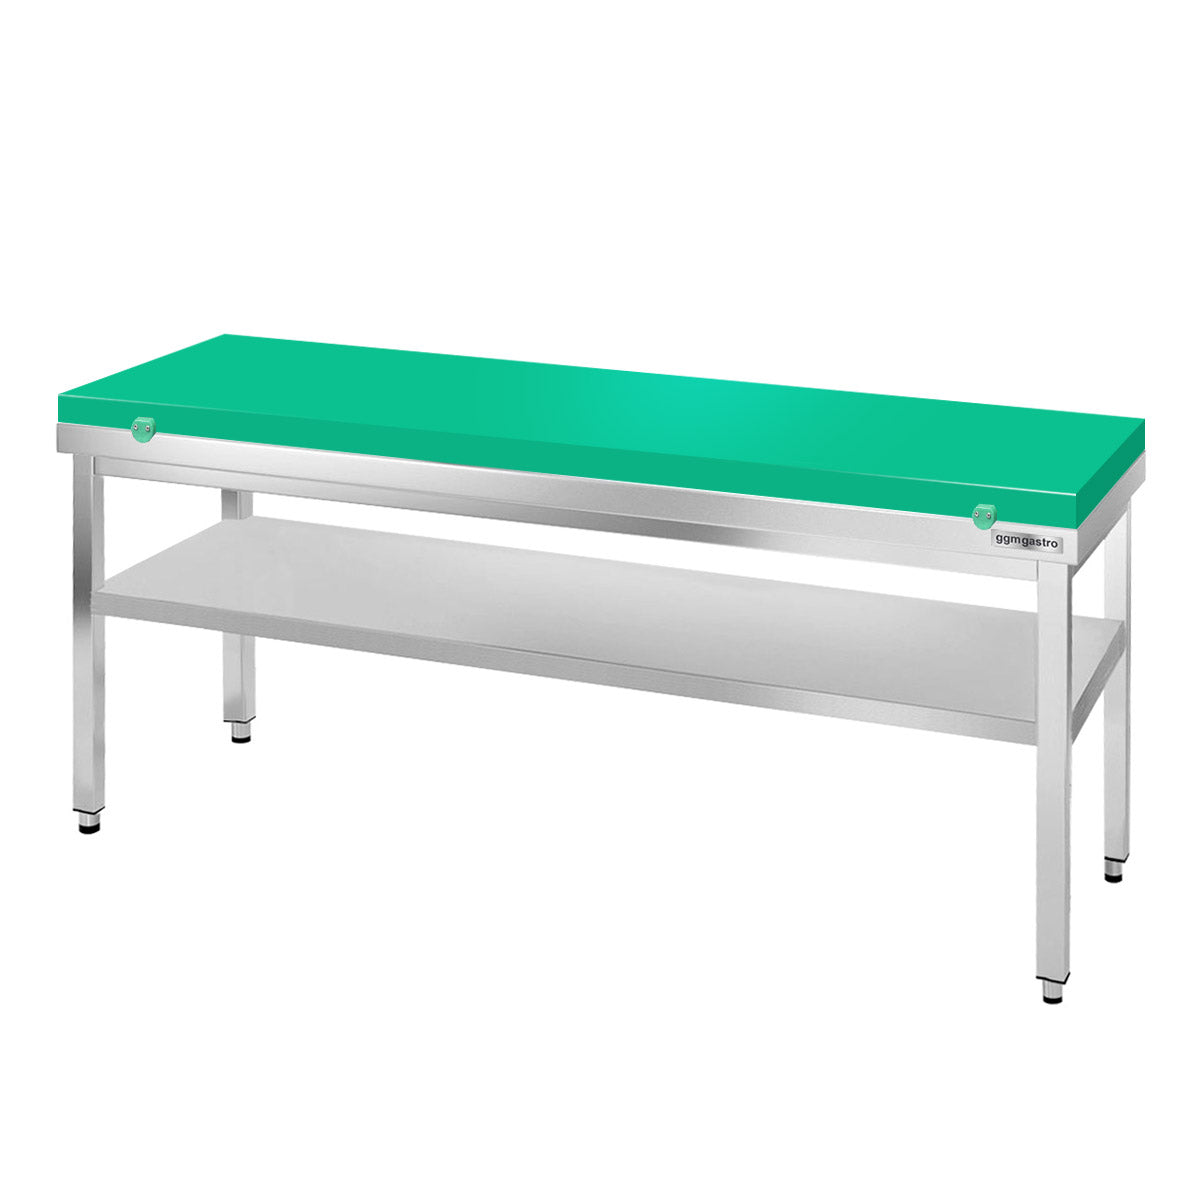 Arbejdsbord i rustfrit stål PREMIUM - 2,0 m - med underhylde - inkl. skærebræt i grønt